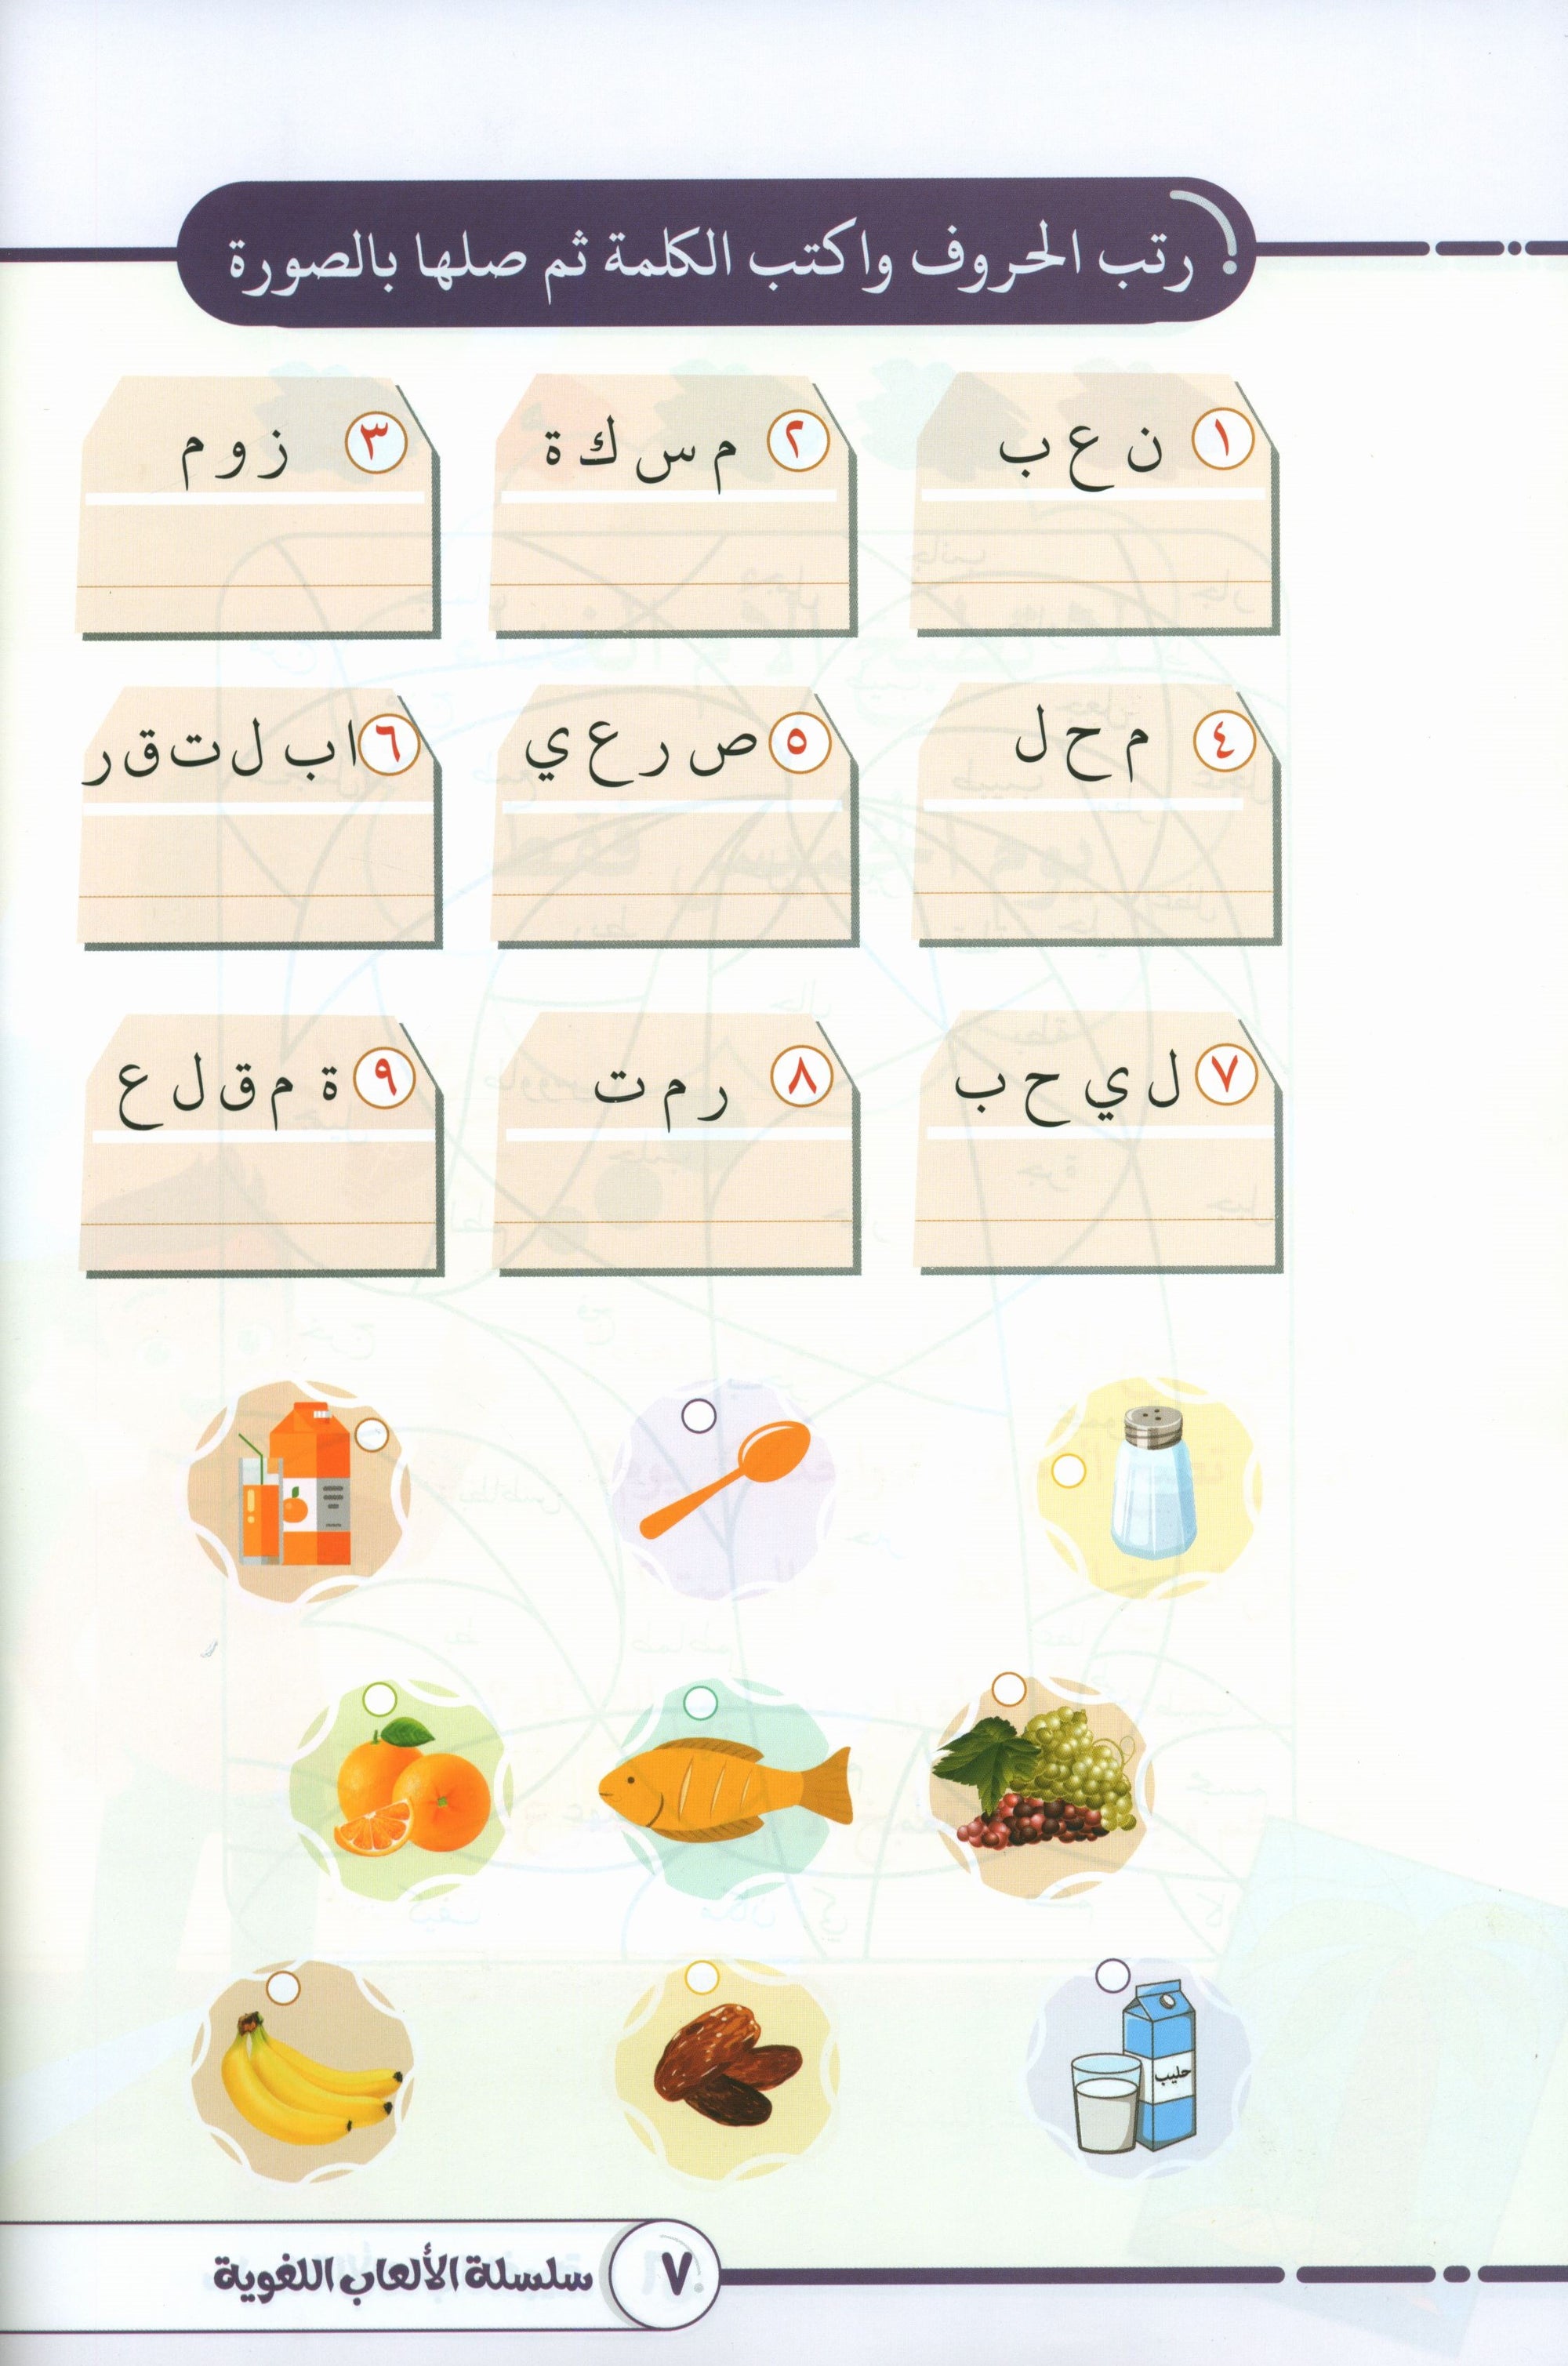 Language Games At Our Children's Hand - Book 1  الألعاب اللغوية بين يدي أولادنا